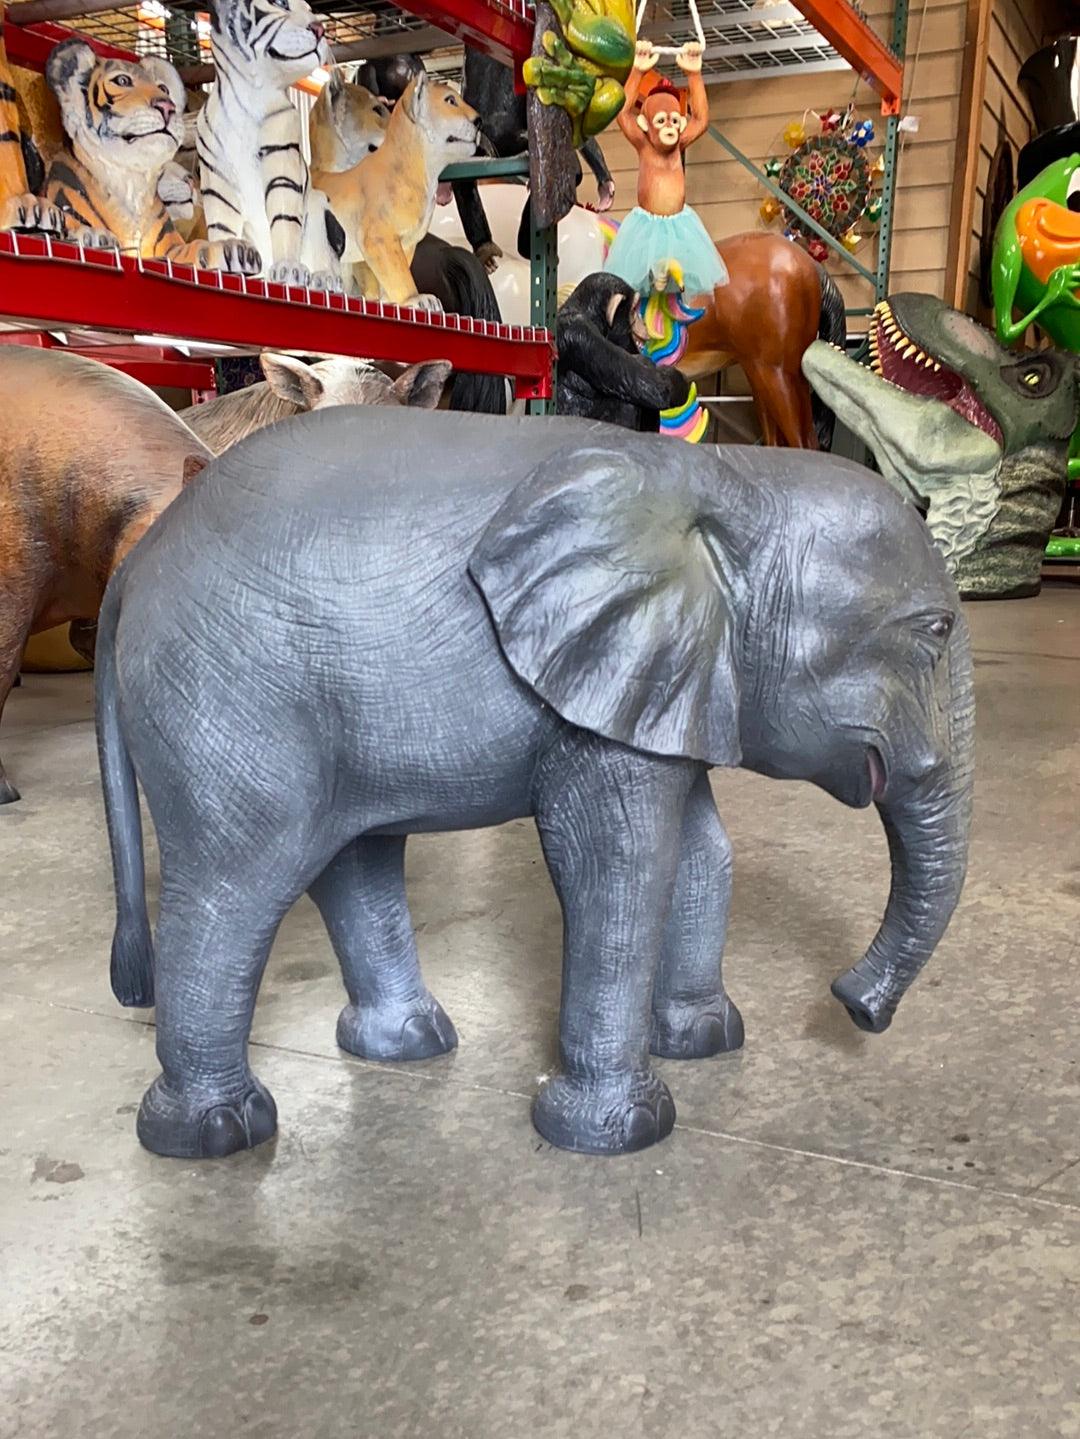 Small Elephant Statue - LM Treasures Prop Rentals 